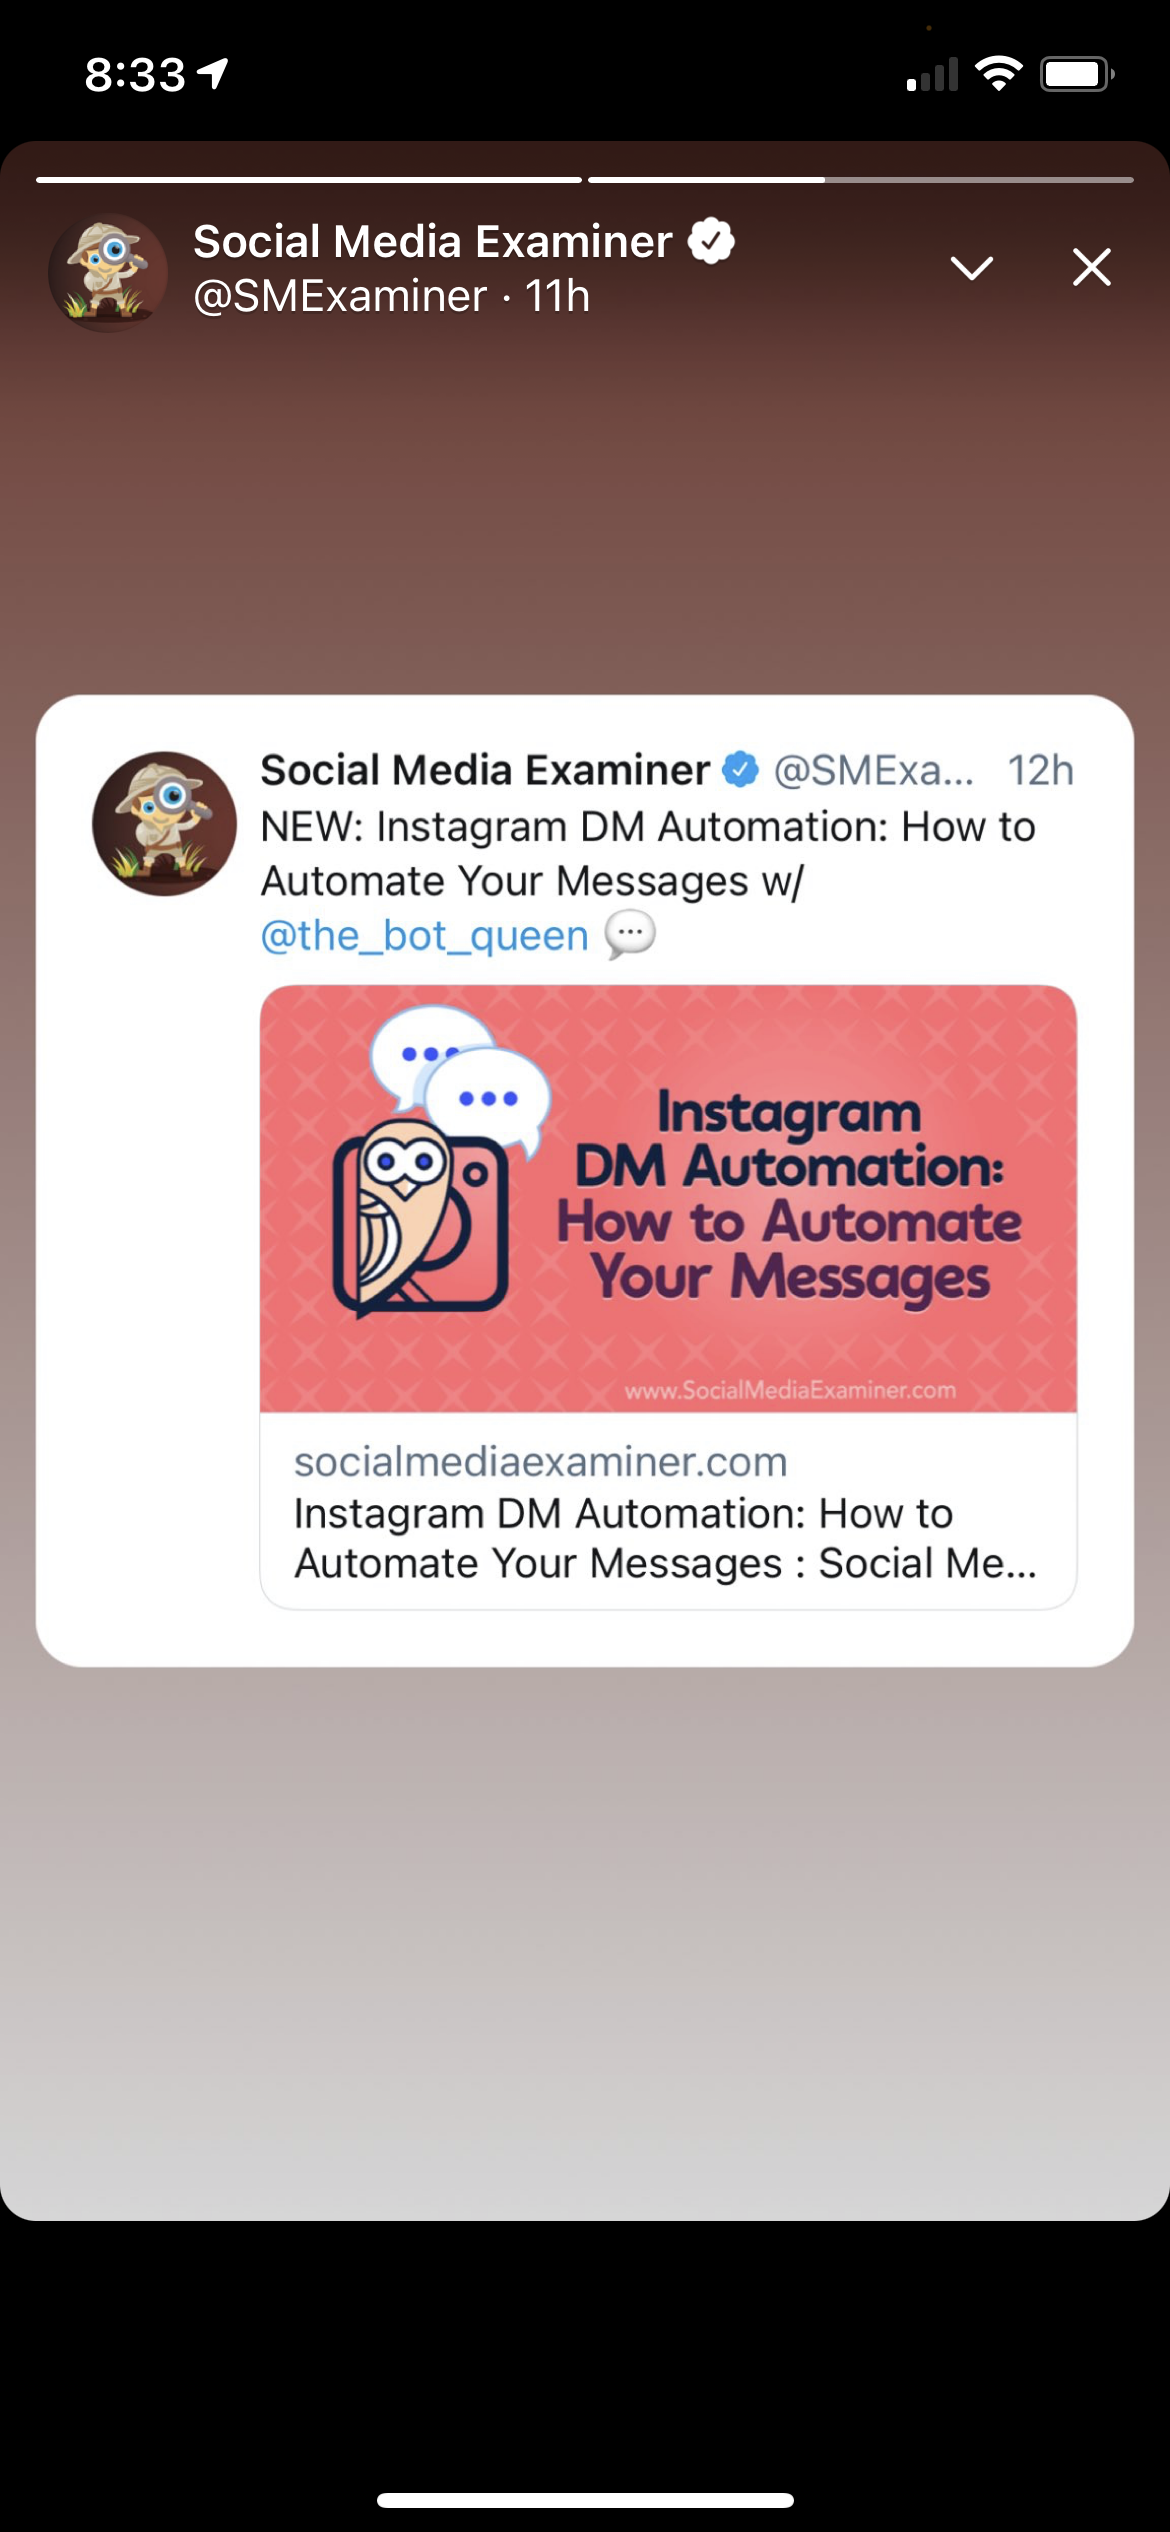 A screenshot of Social Media Examiner's Twitter Fleet.